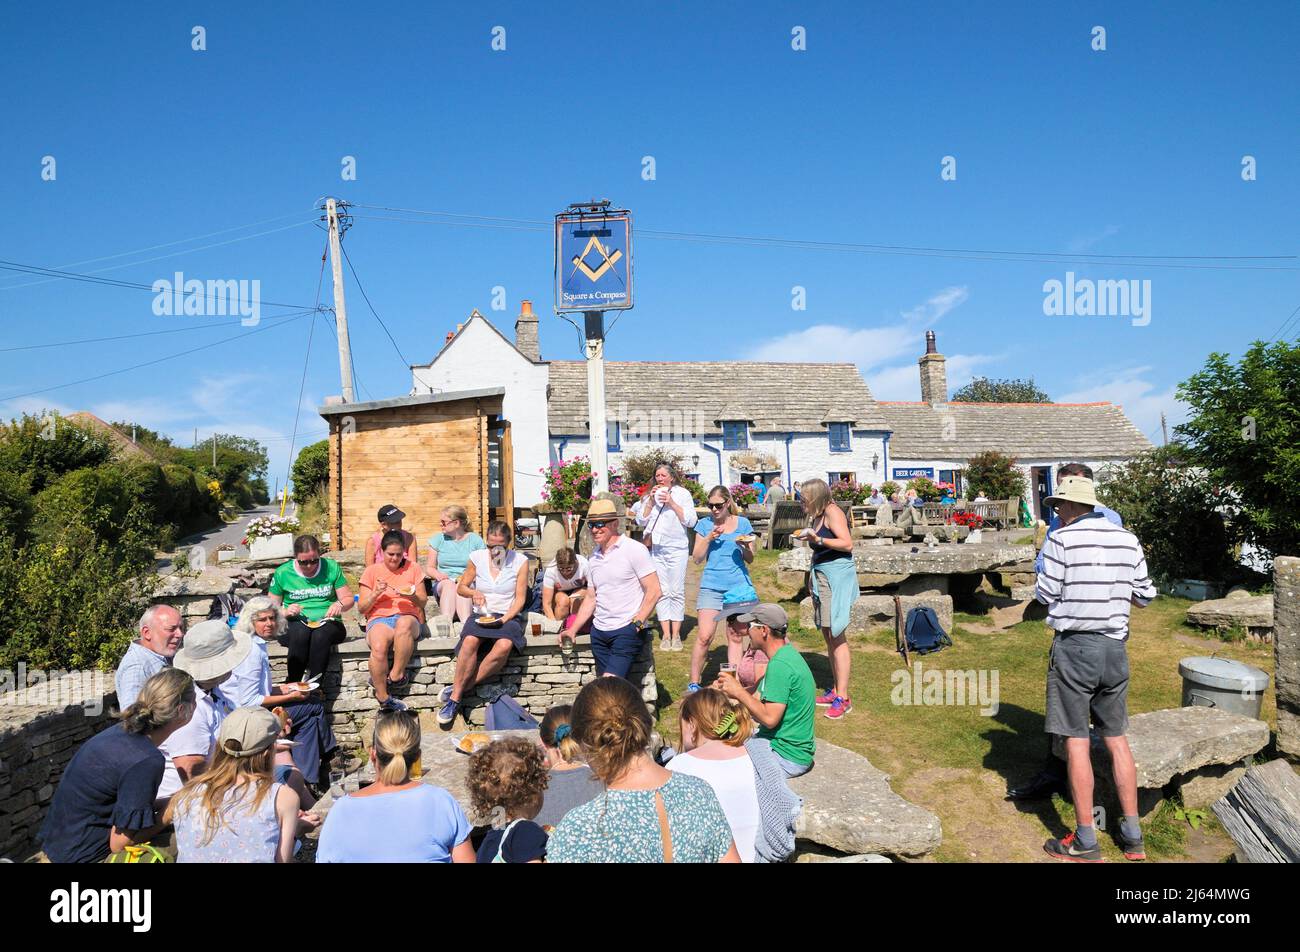 Les gens apprécient la nourriture et les boissons au Square and Compass, un pub primé dans le village de Worth Matravers, à l'île de Purbeck, Dorset, Angleterre, Royaume-Uni Banque D'Images